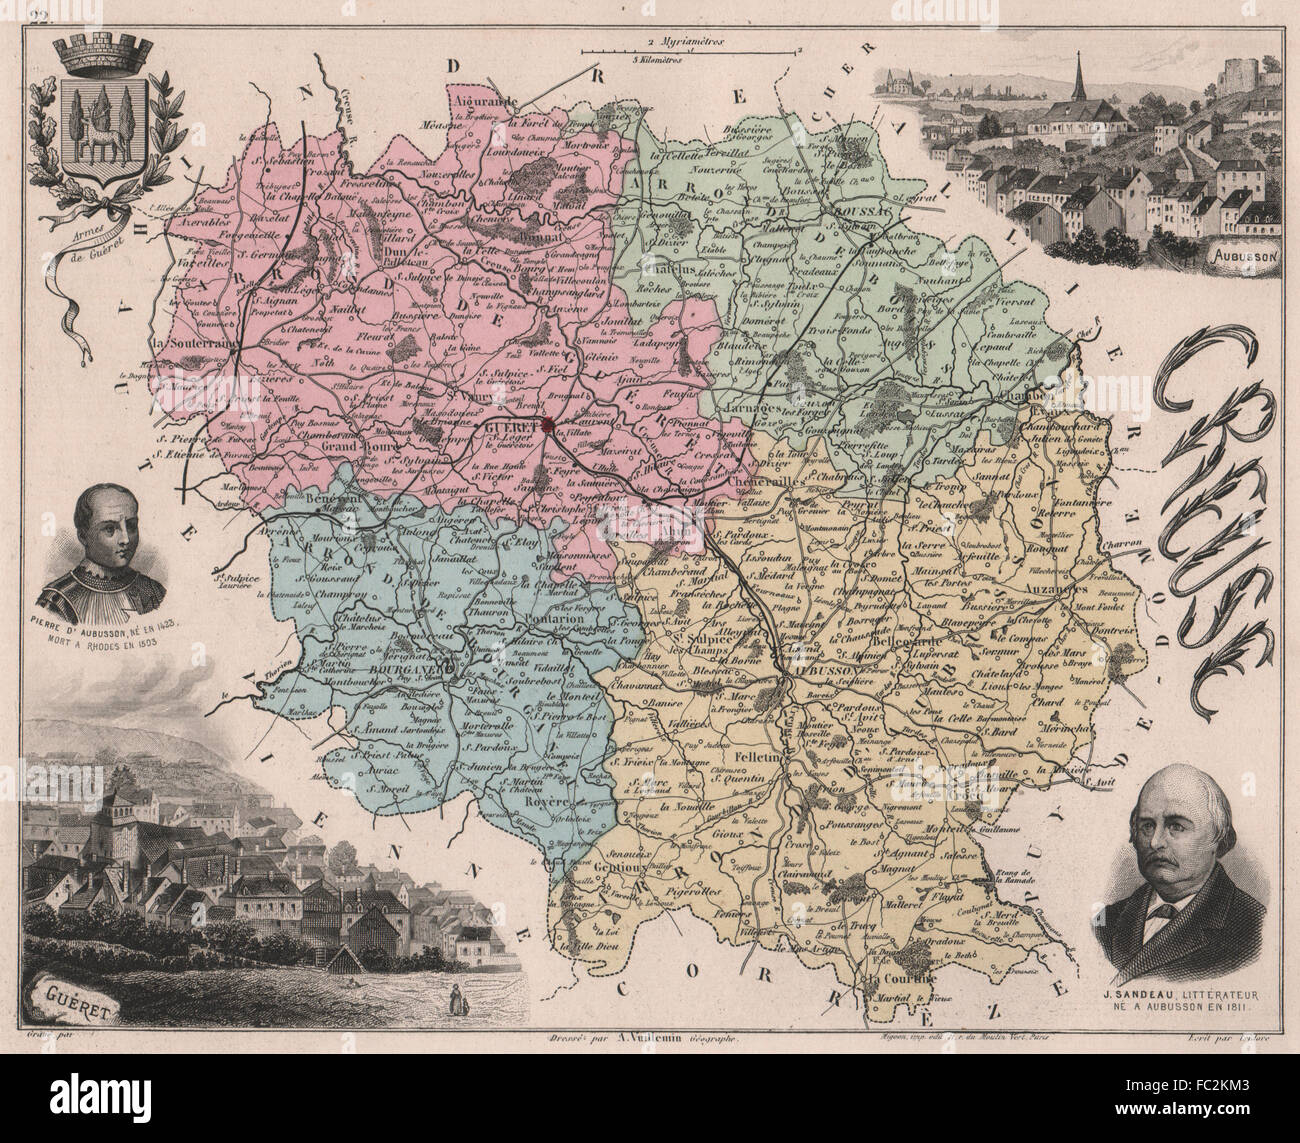 CREUSE. Département. Guéret. Aubusson. Sandeau. d'Aubusson. VUILLEMIN, 1879 map Stock Photo